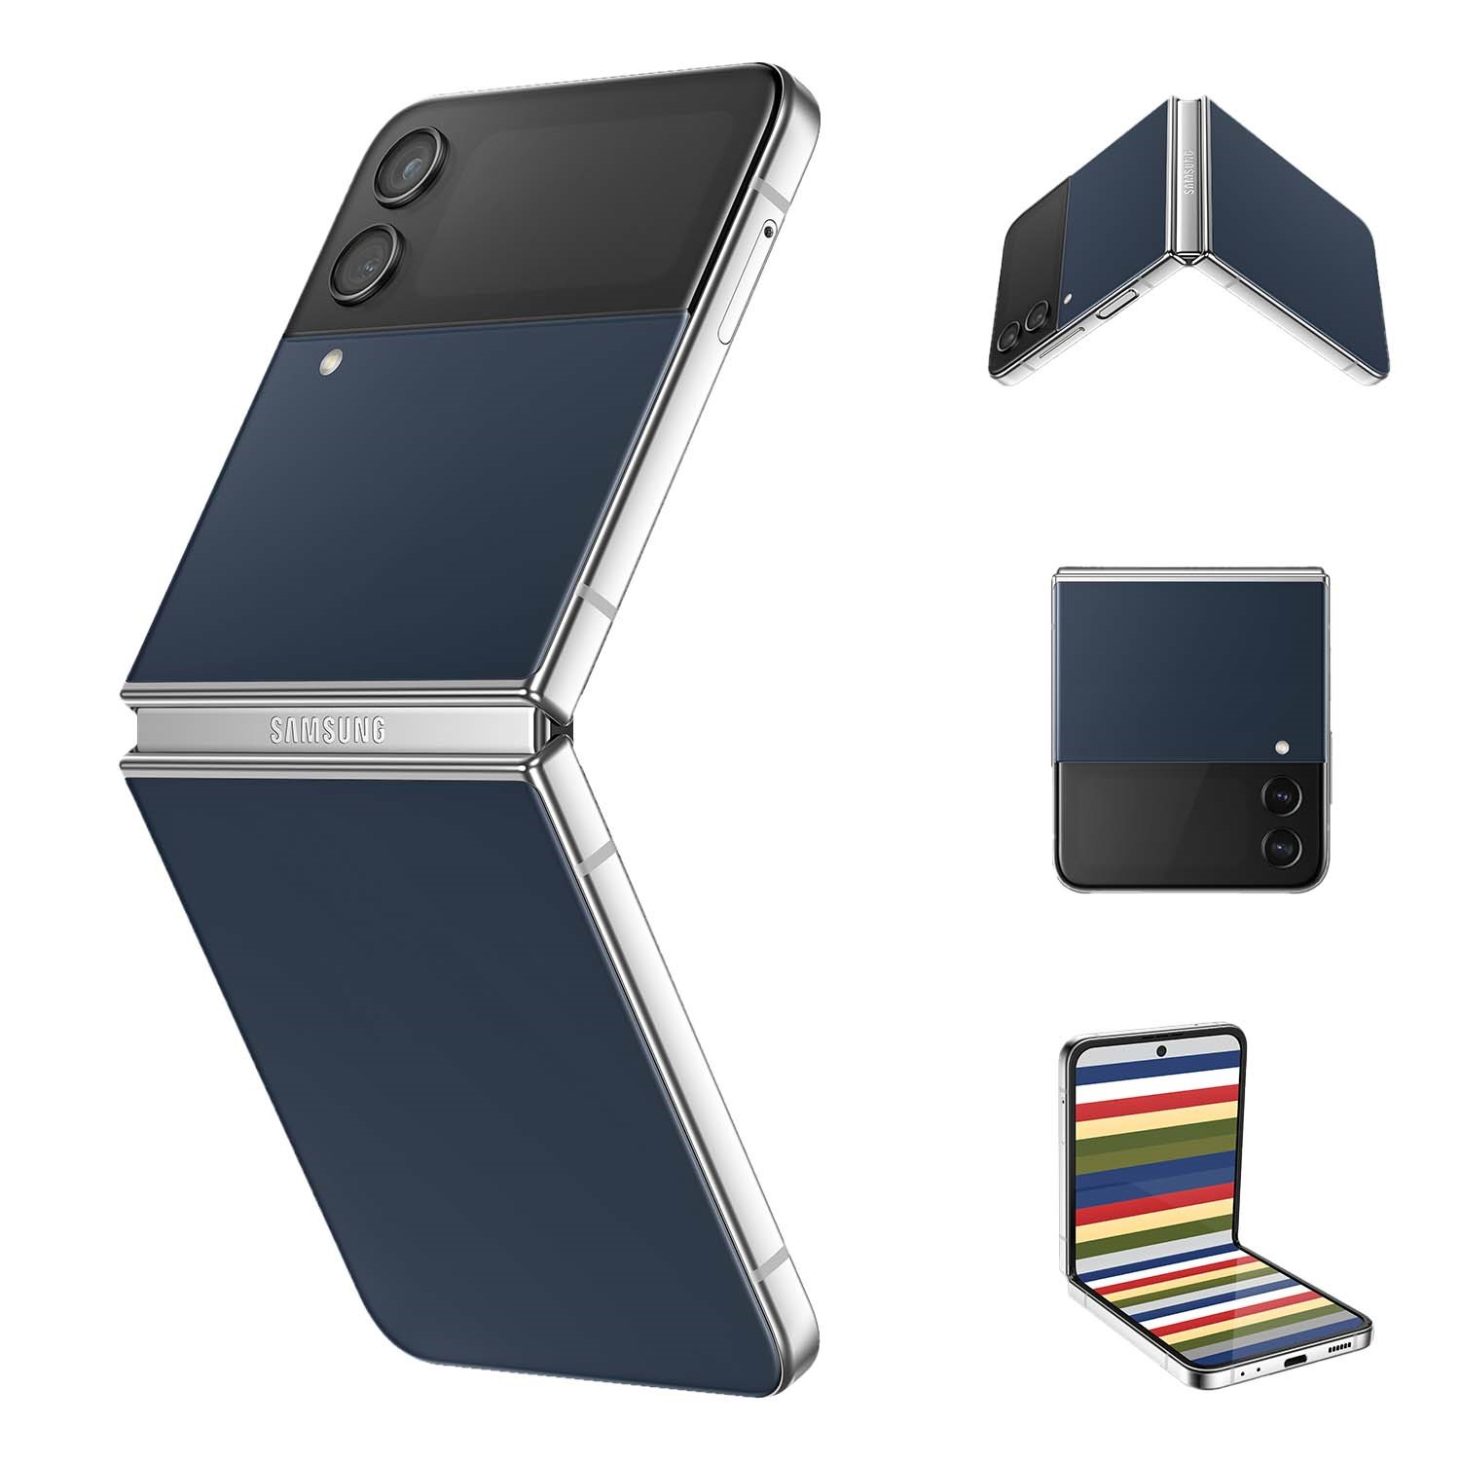 Galaxy Z Fold4 và Galaxy Z Flip4 có thêm màu sắc nổi bật mới - Zflip xanh